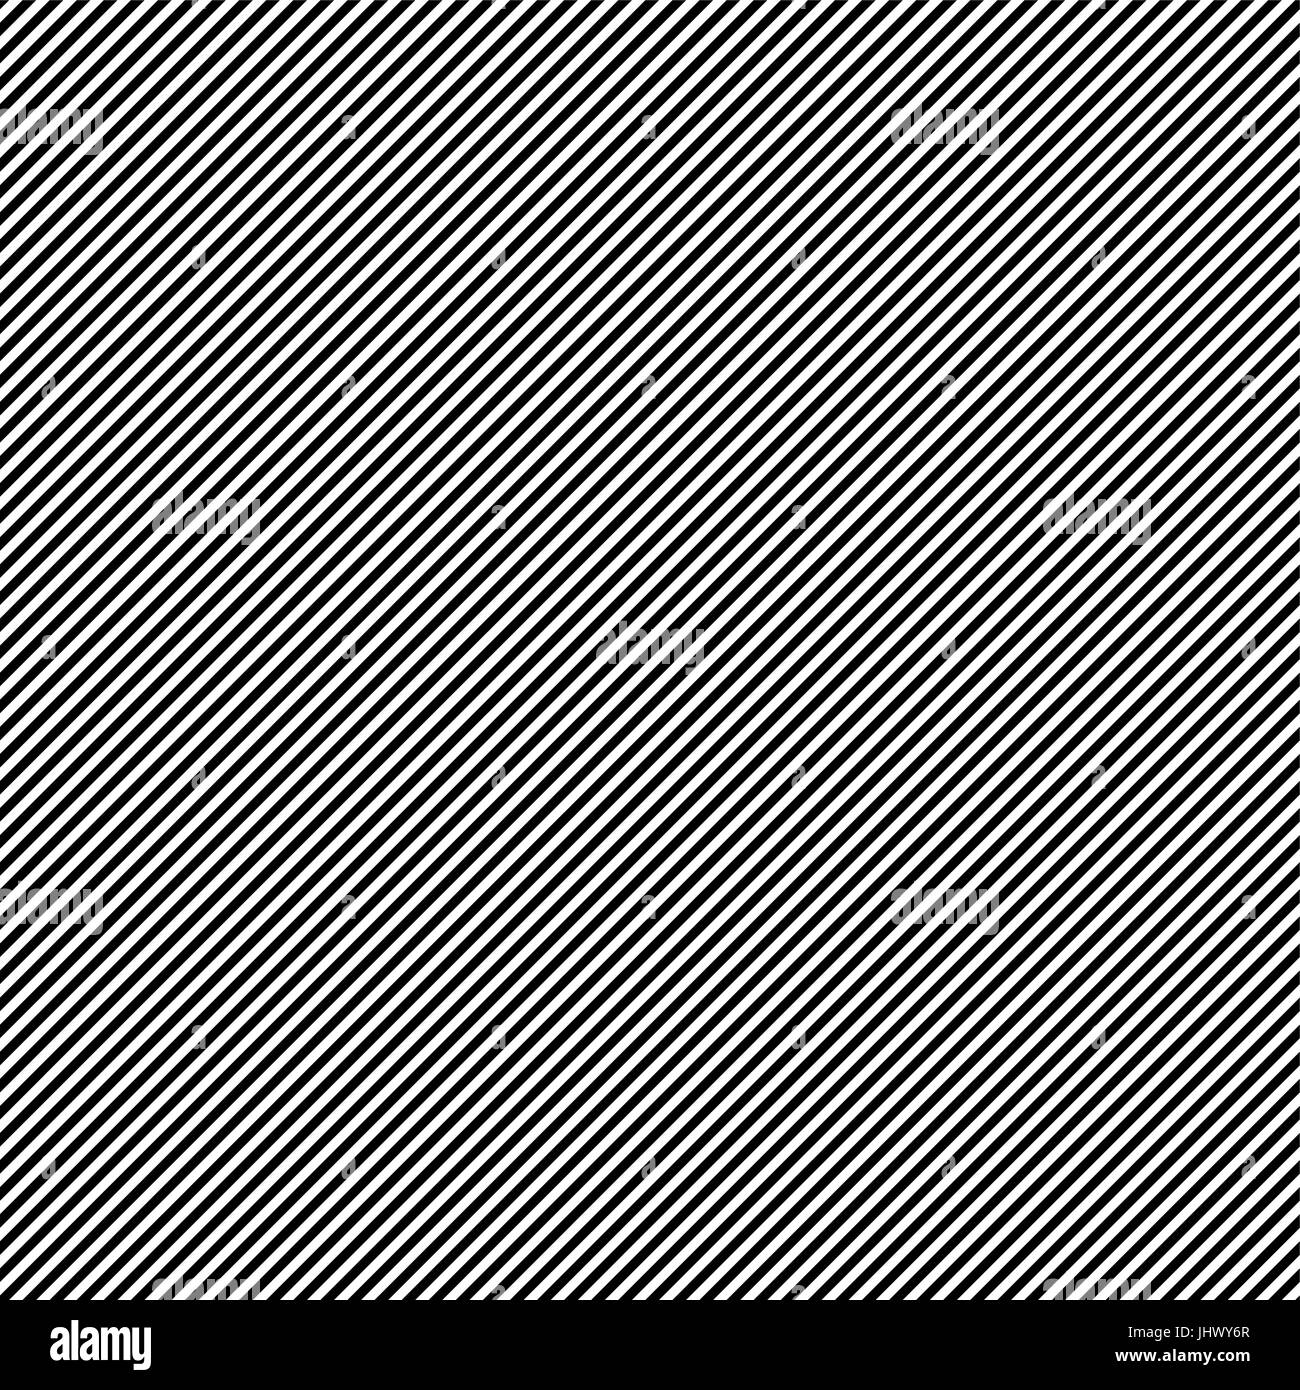 Las líneas diagonales perfecta patrón blanco y negro. Repetir bandas monocromas recto textura del fondo. Antecedentes vector geométrica Ilustración del Vector